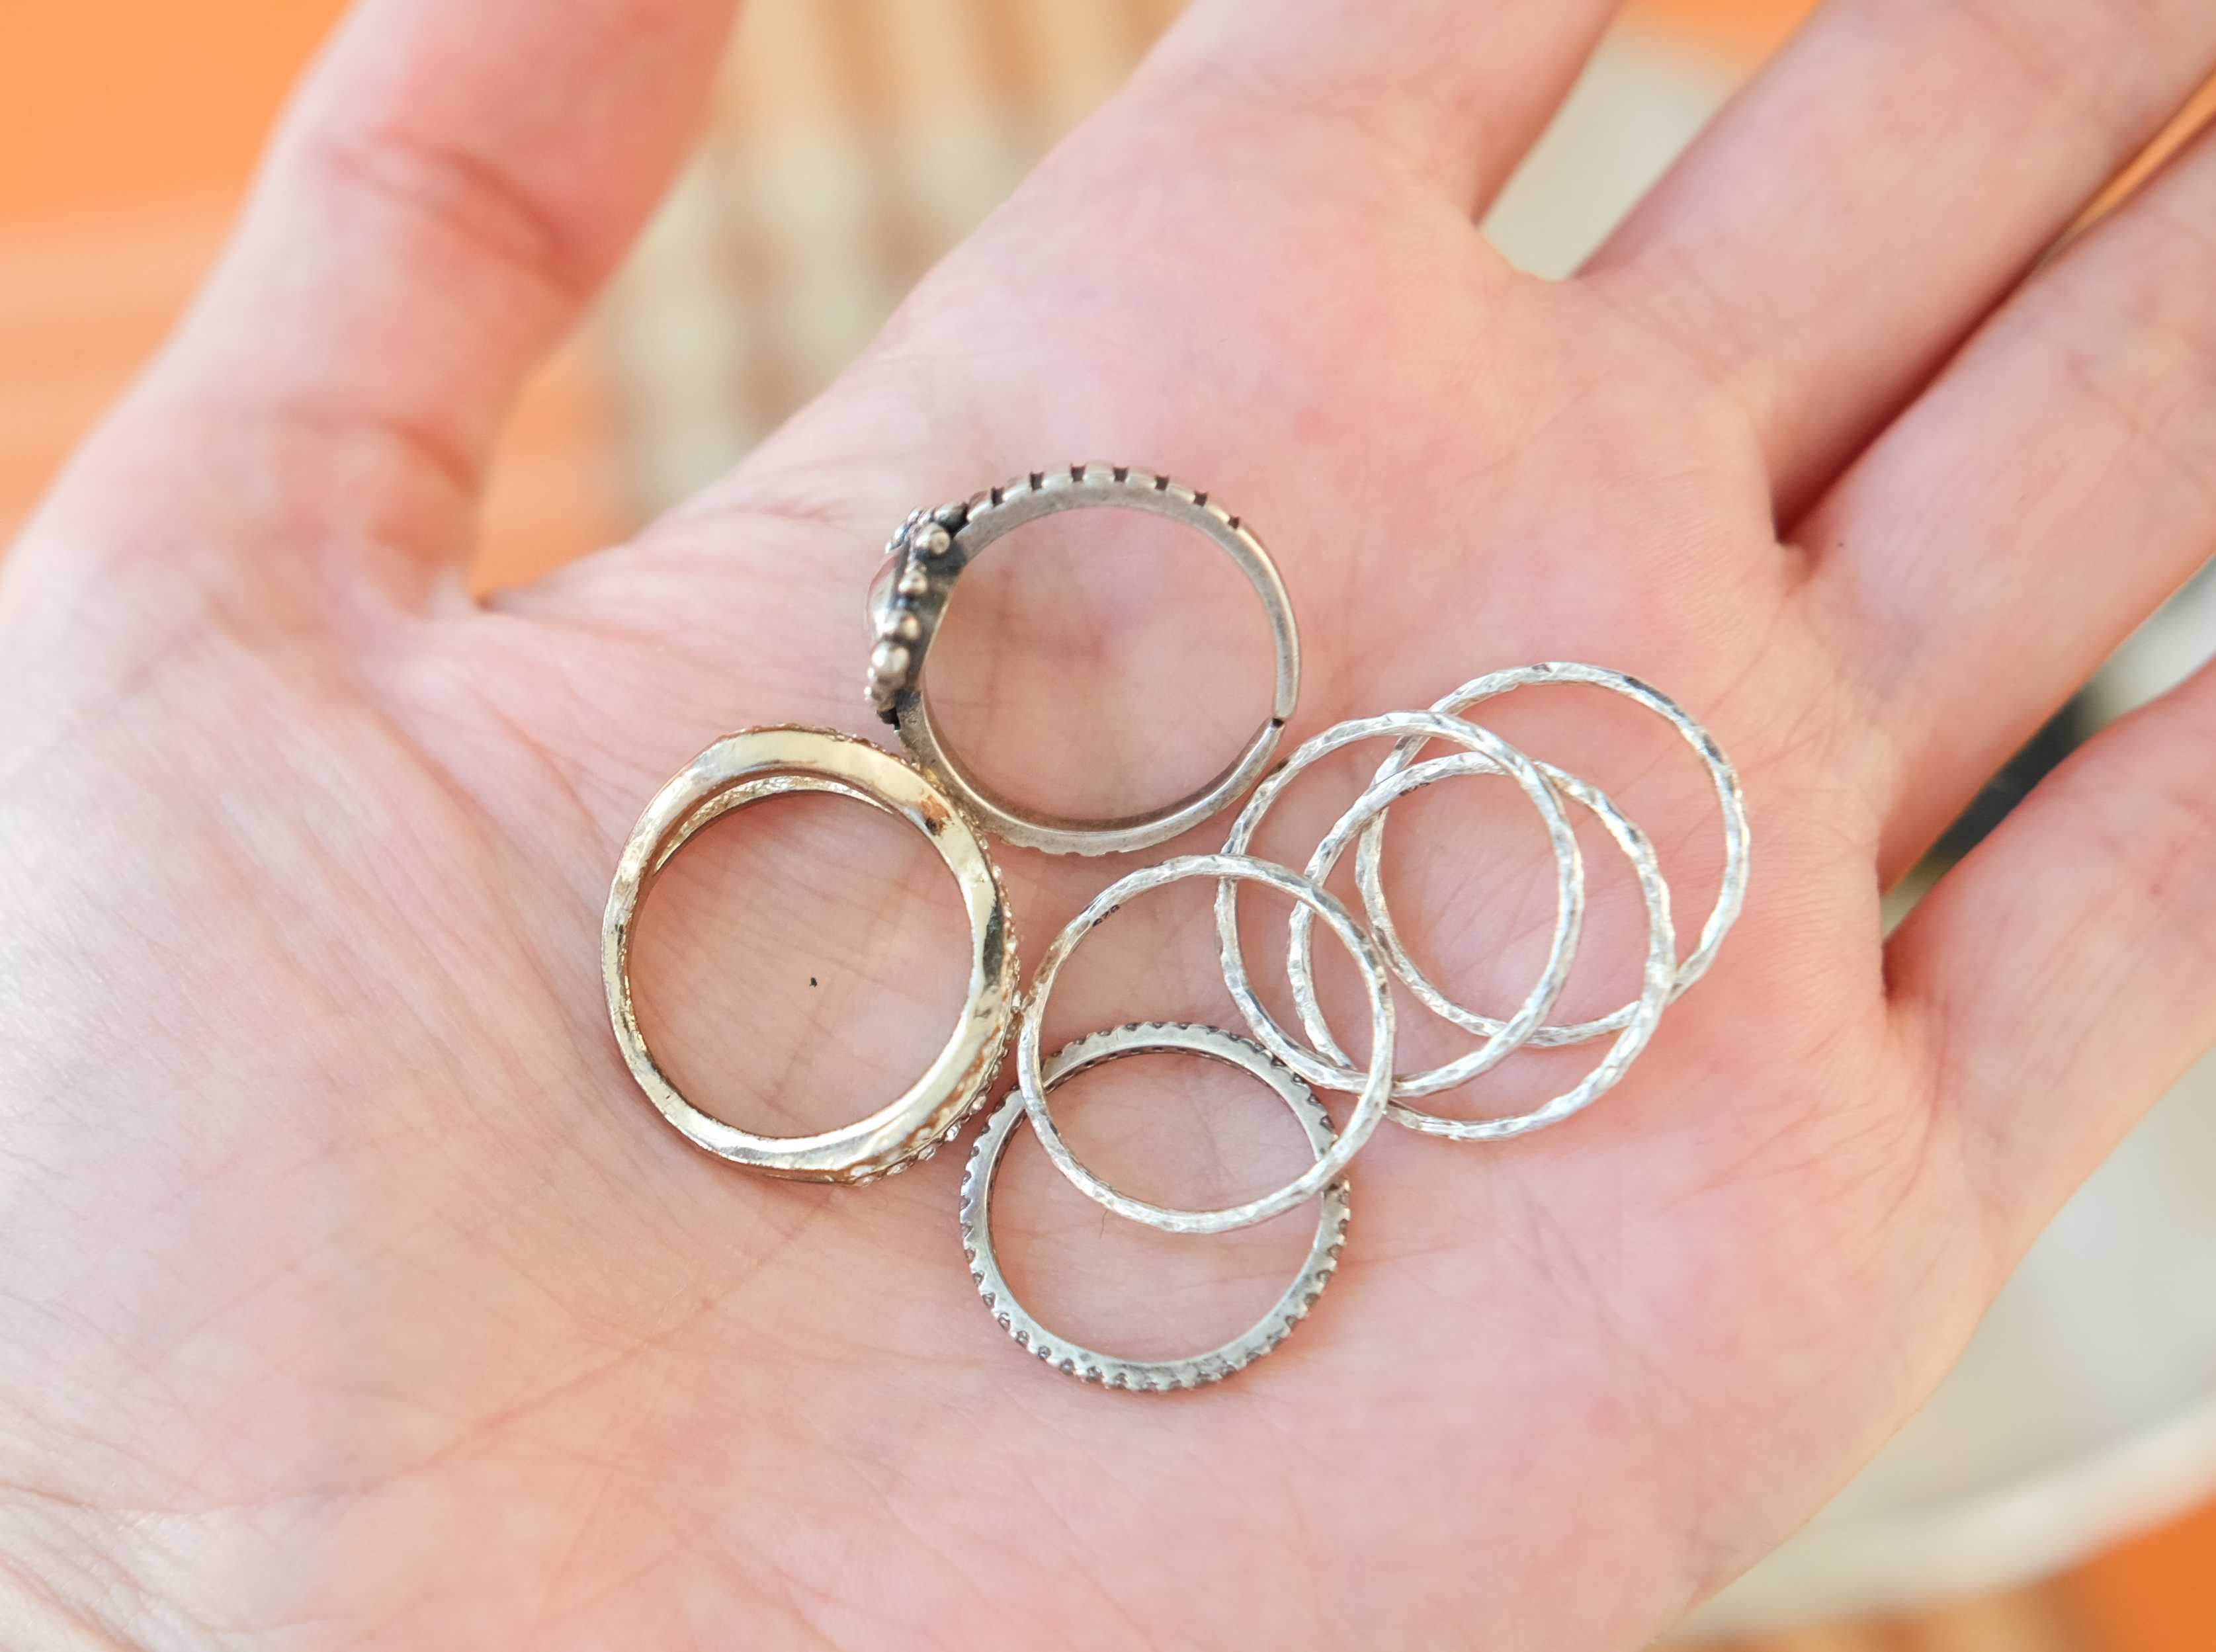 Необычные серебряные рельефные кольца, серебро 925 проба,16 мм диаметр